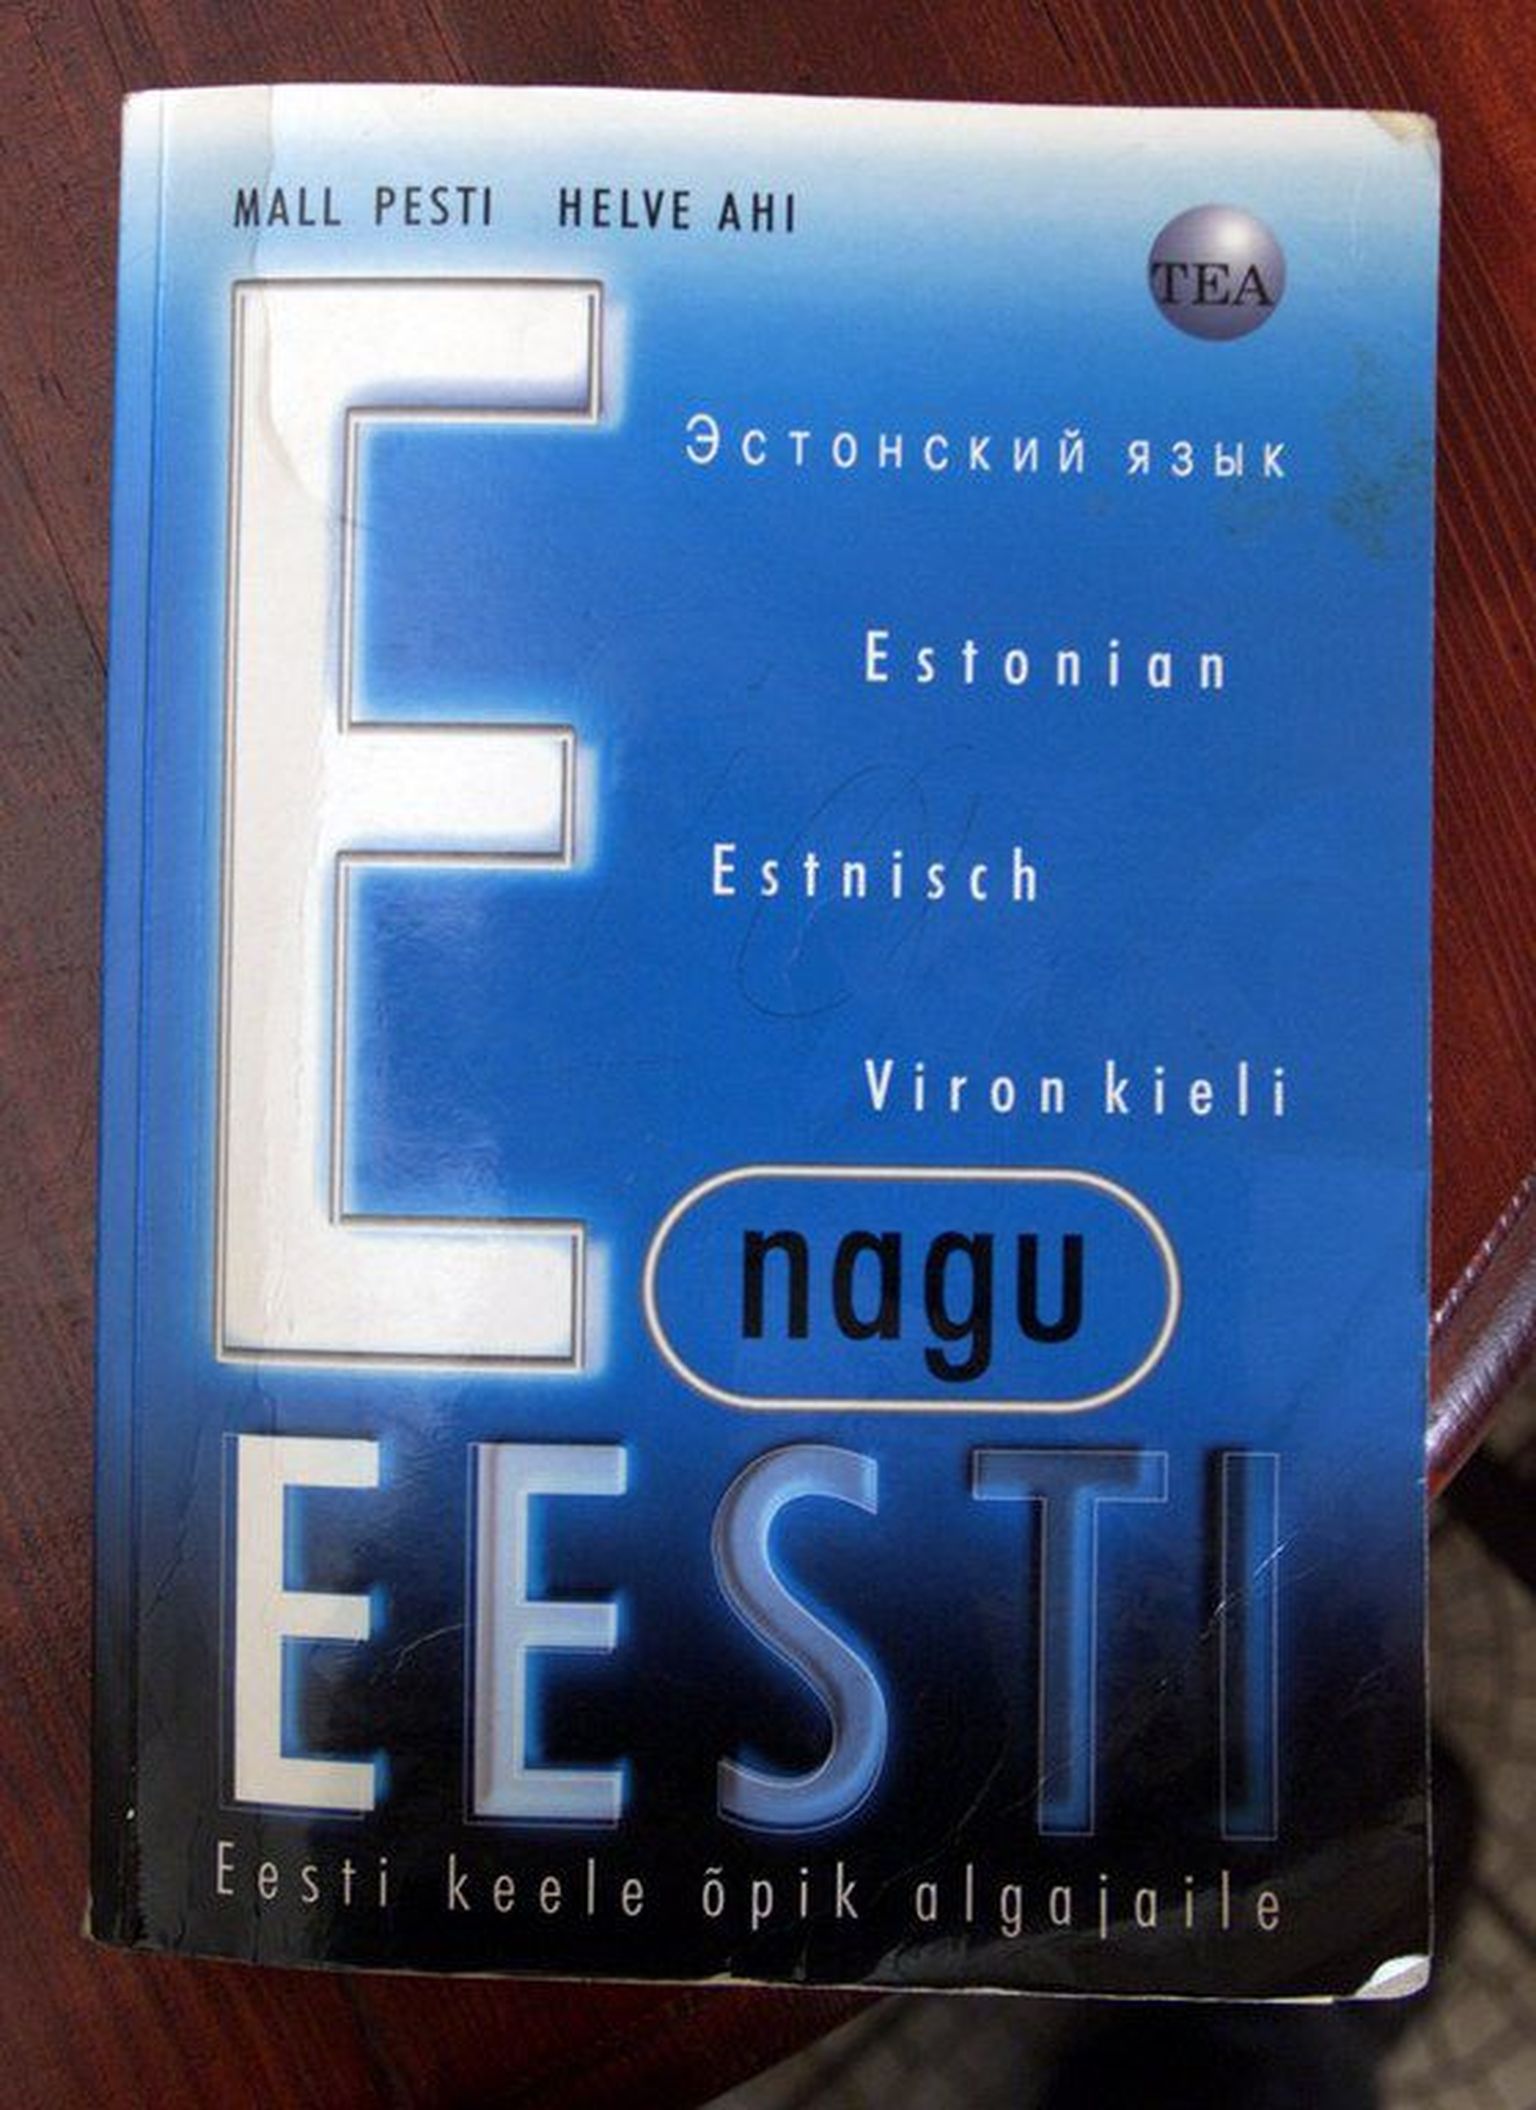 Учебник эстонского языка.